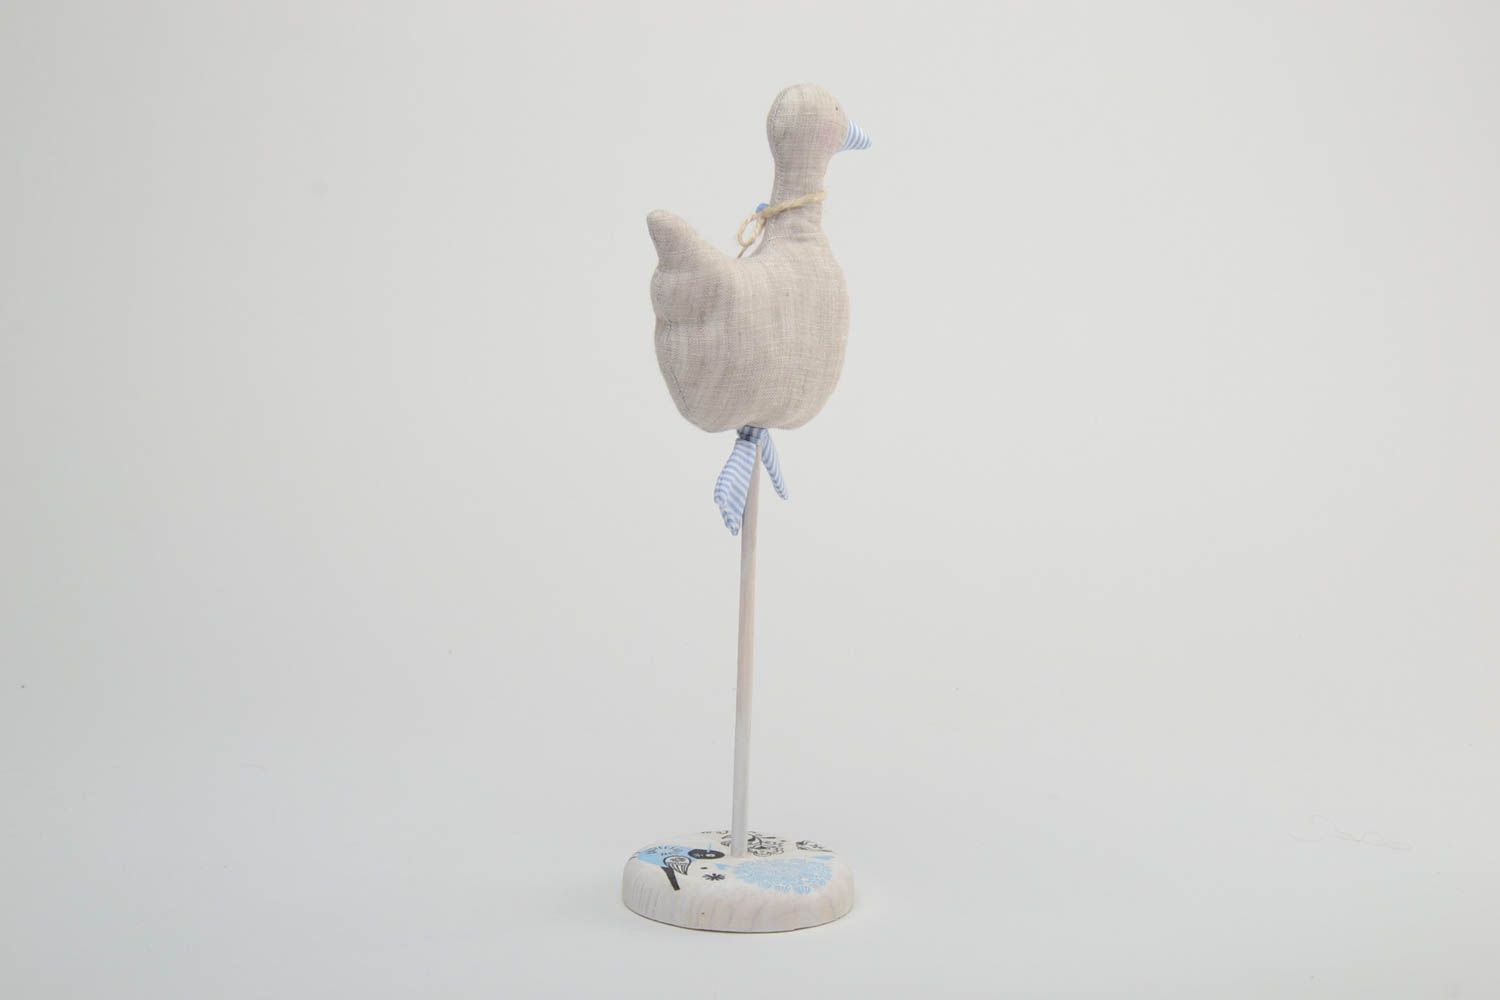 Textil Figur handmade für Dekor aus Leinen auf Holzbasis weiche Ente wunderbar foto 4